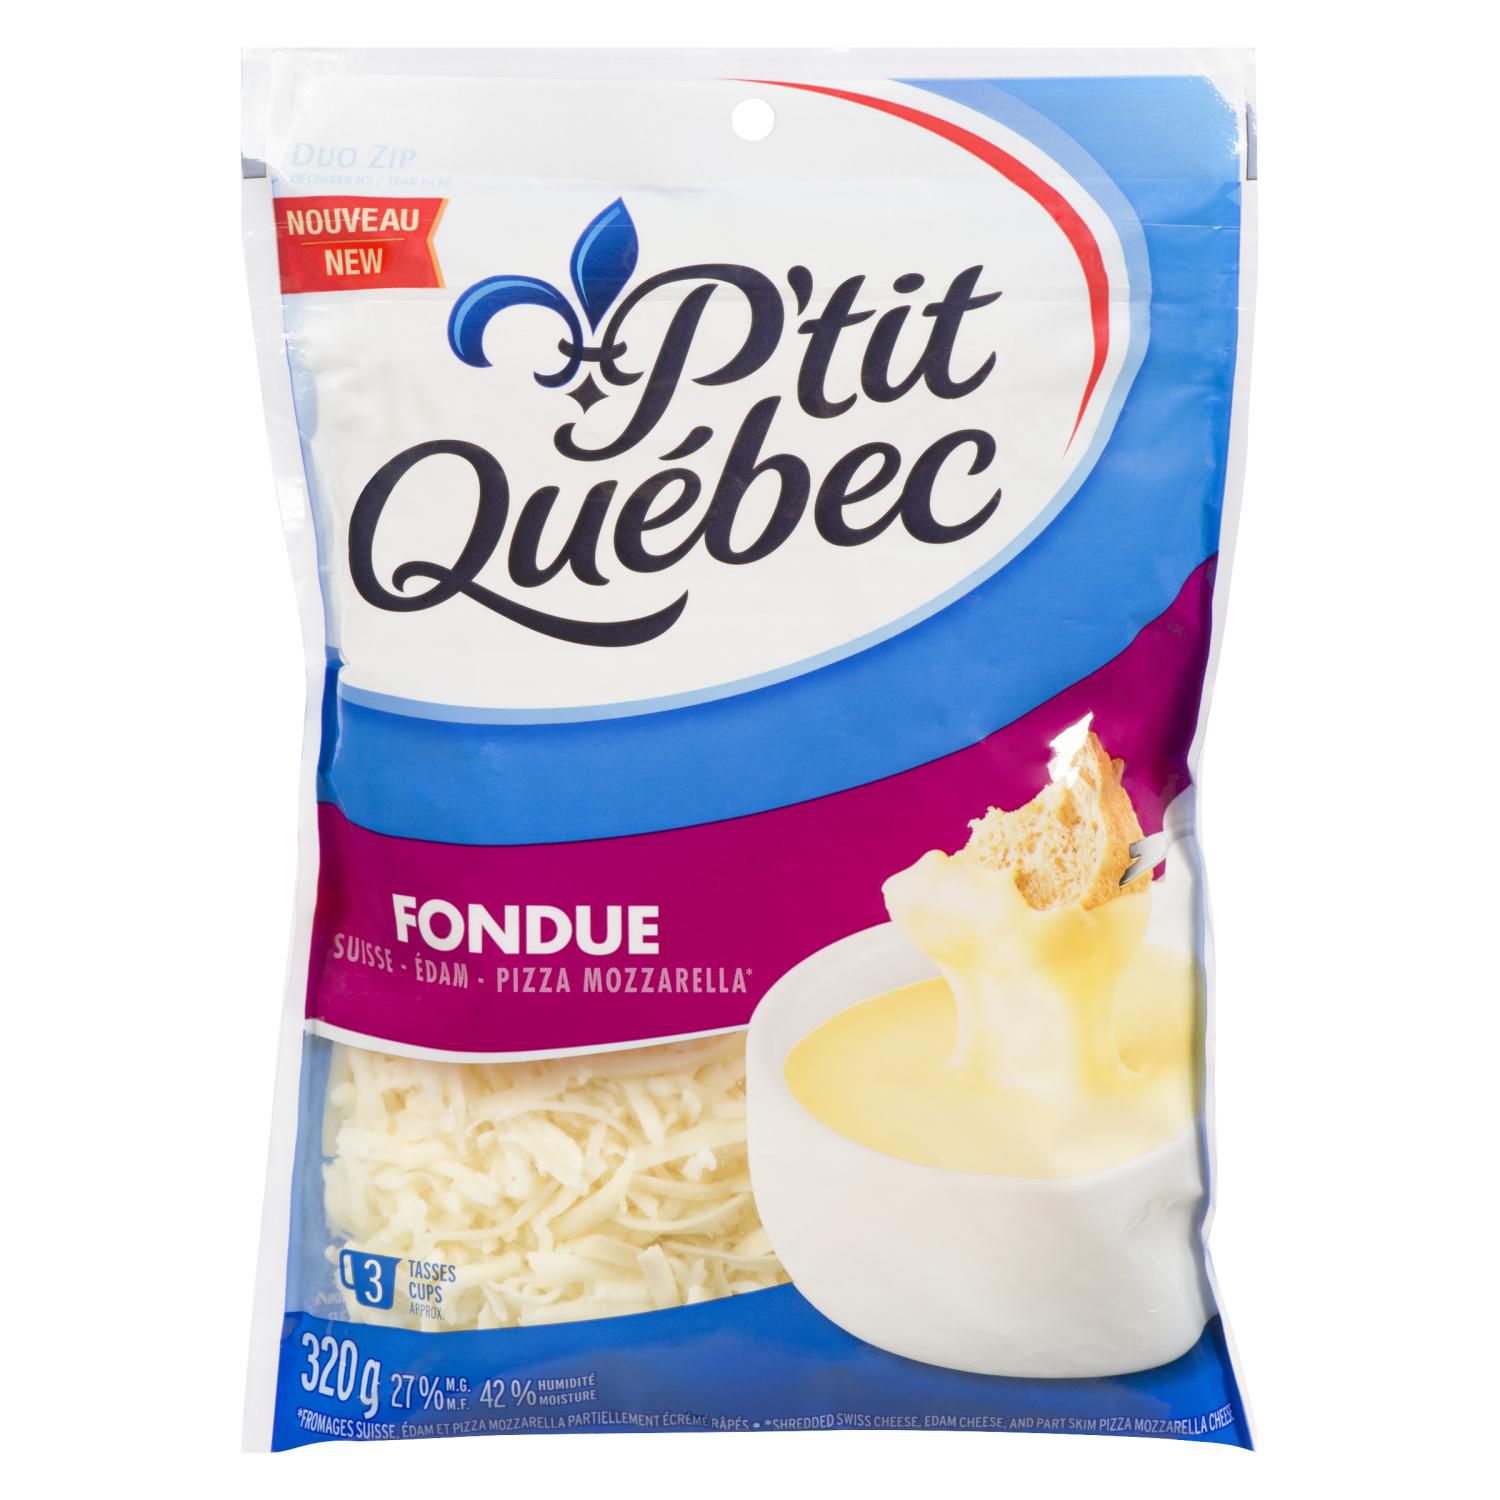 Fromage rappé qui pue - P'tit Québec